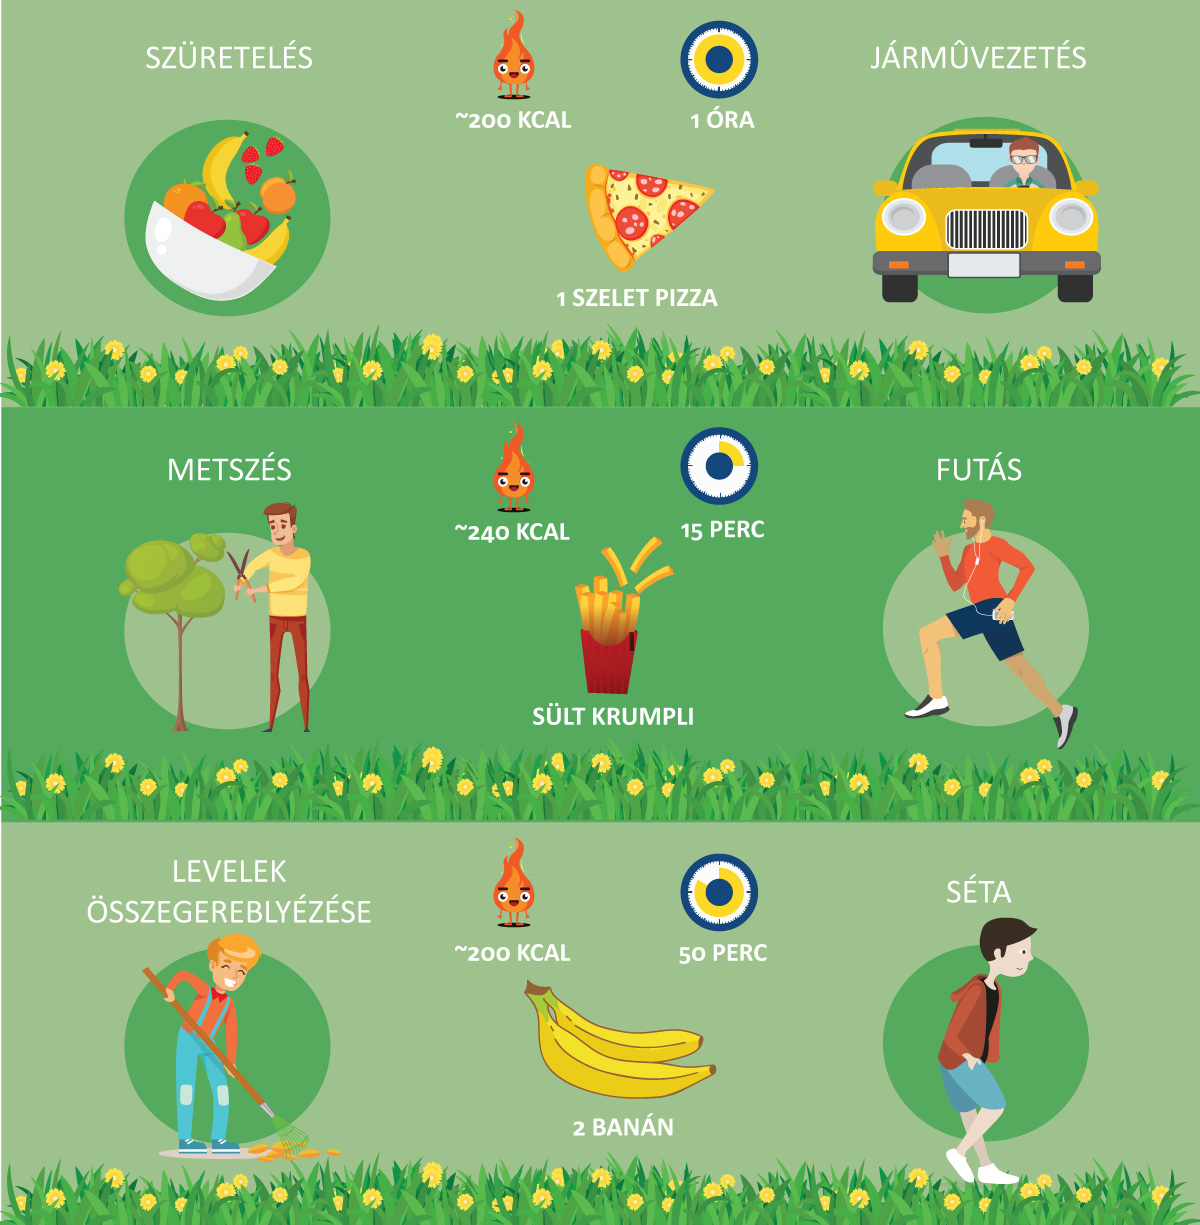 Mennyi sportot jelent egy óra kertészkedés?